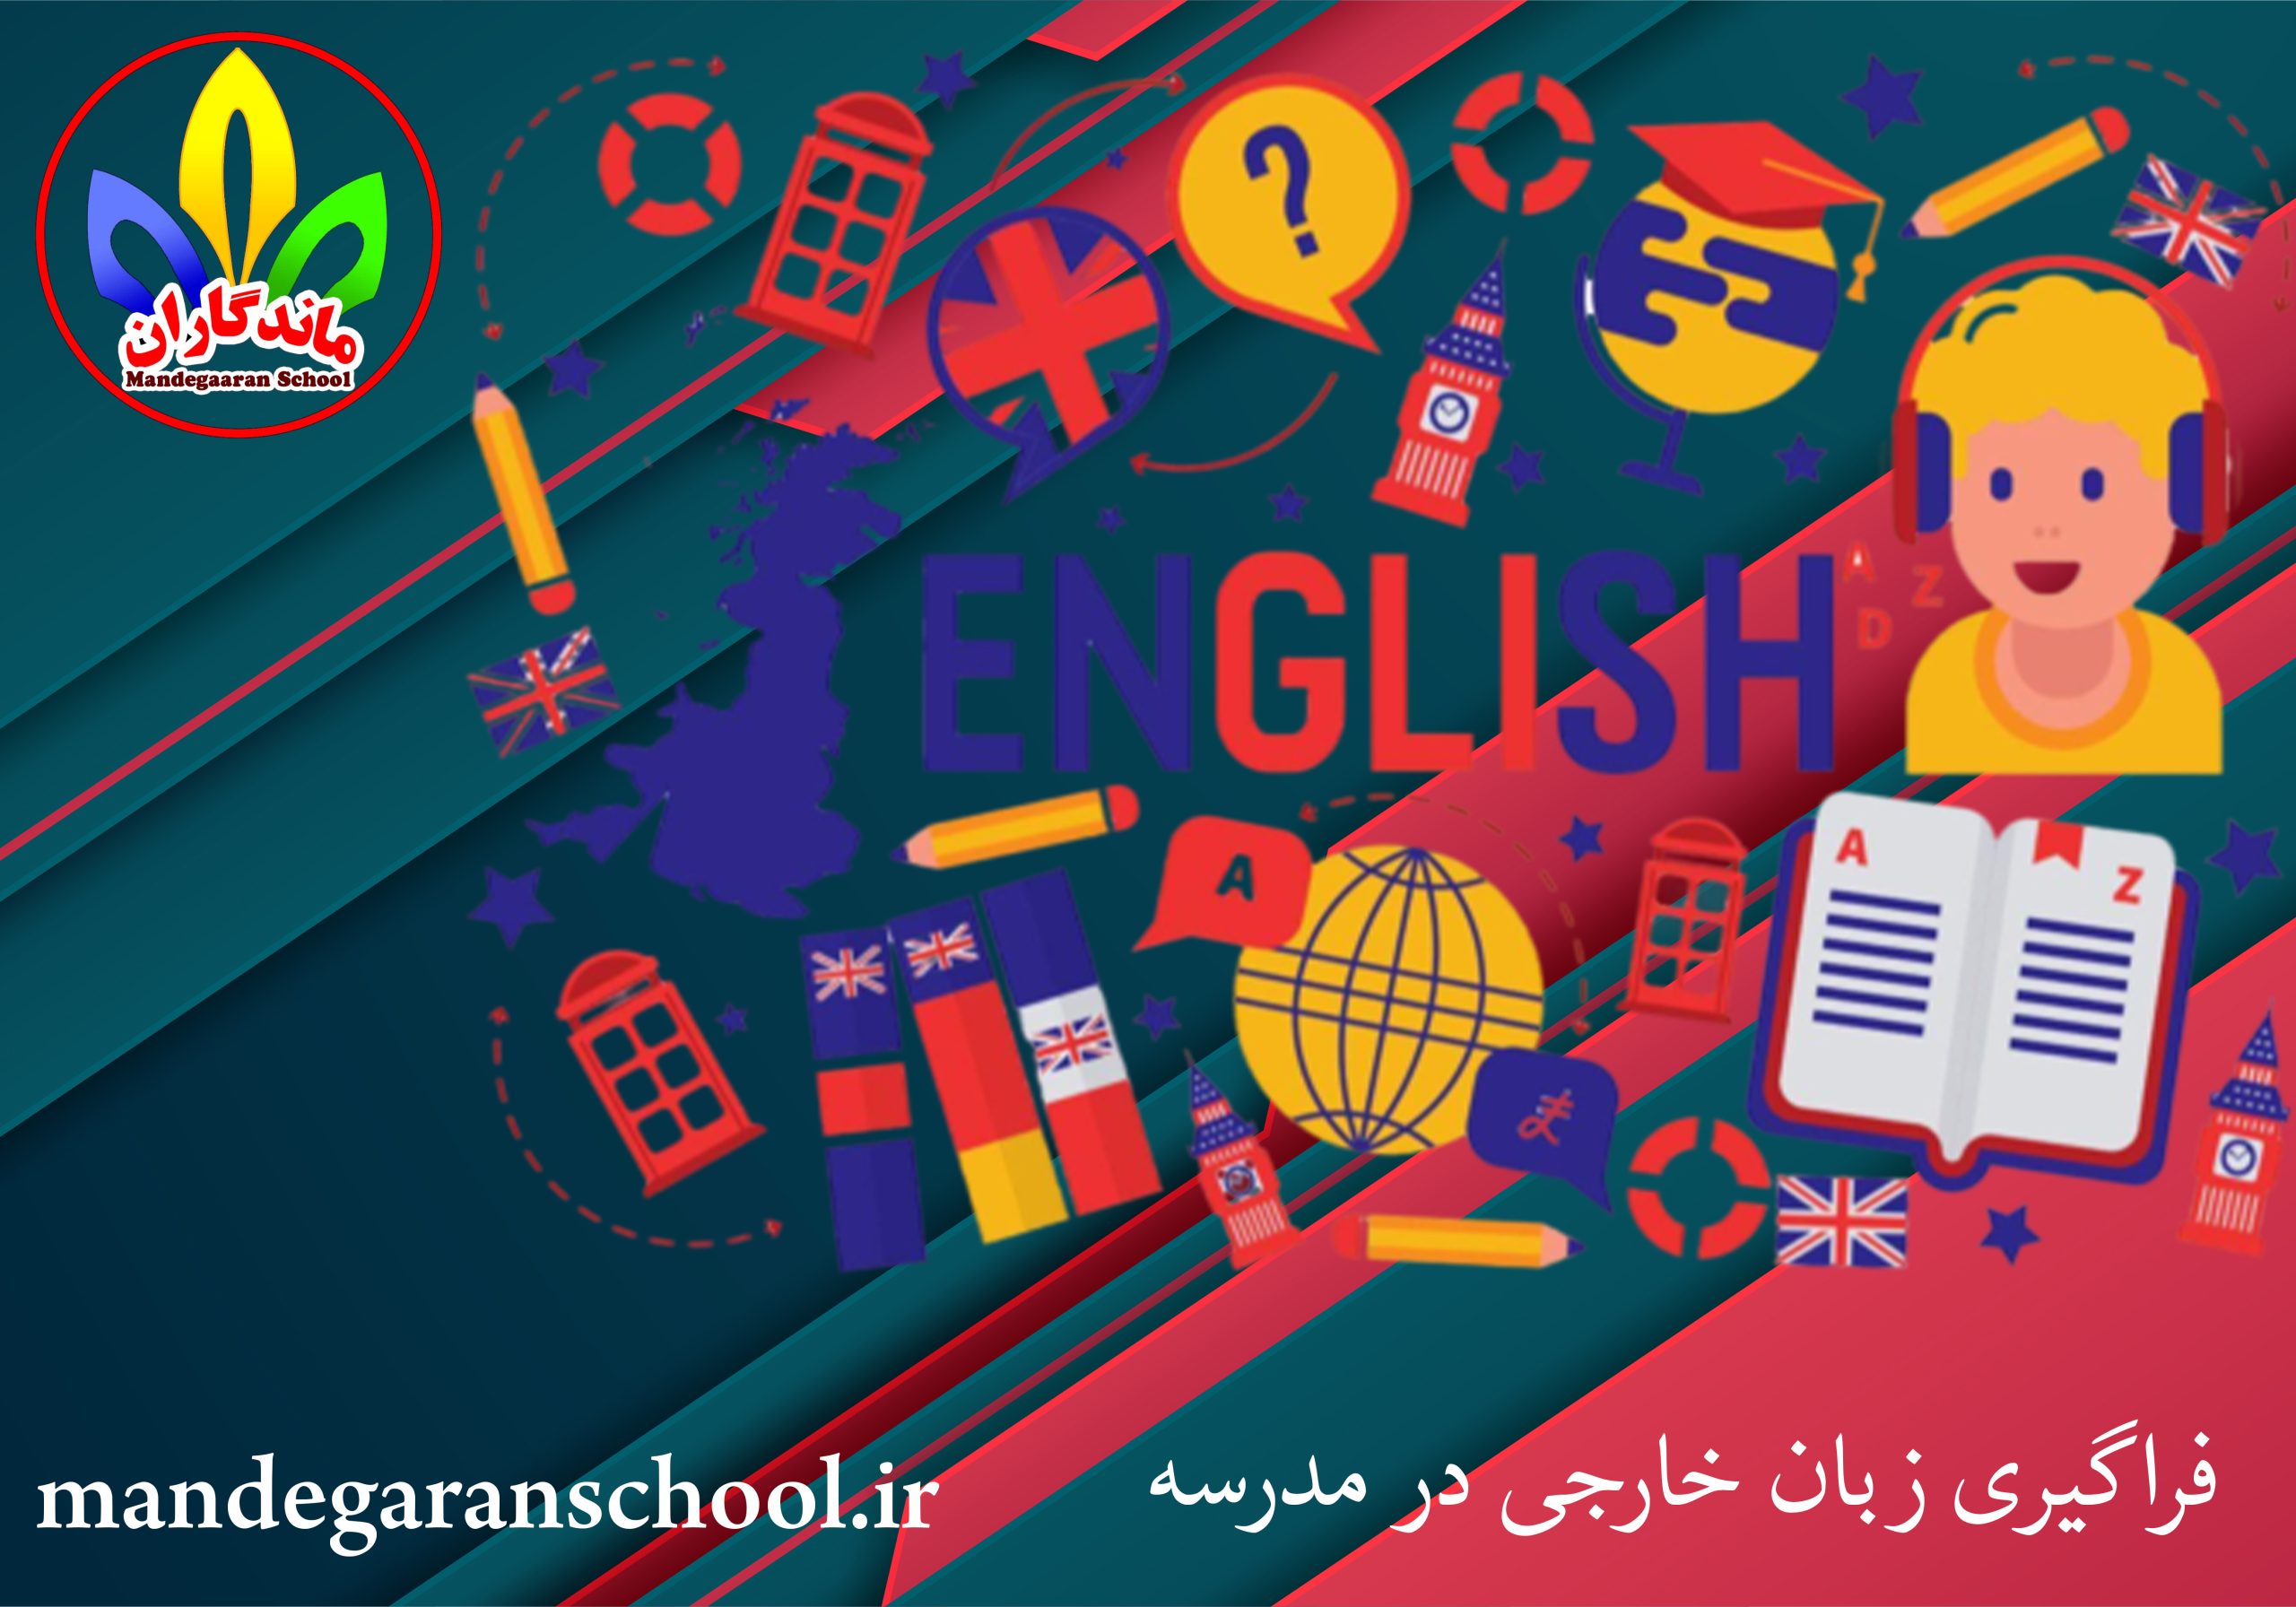 فراگیری زبان خارجی در مدرسه | بهترین مدرسه گلشهر | ماندگاران